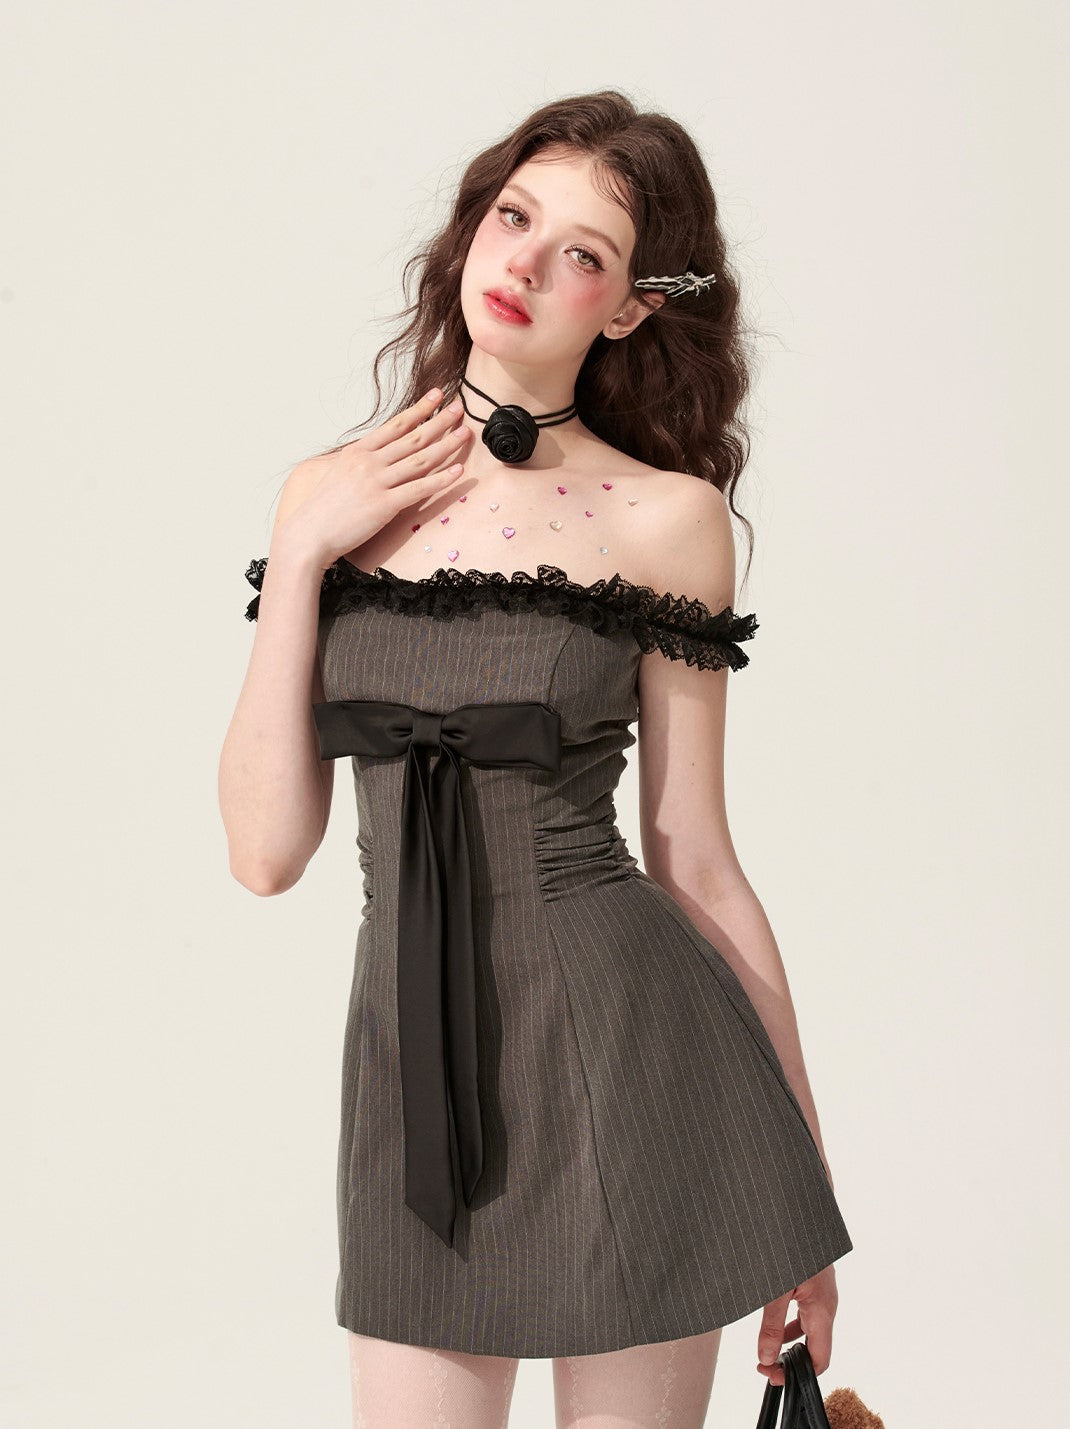 Smoke-colored One-shoulder Dress DIA0145